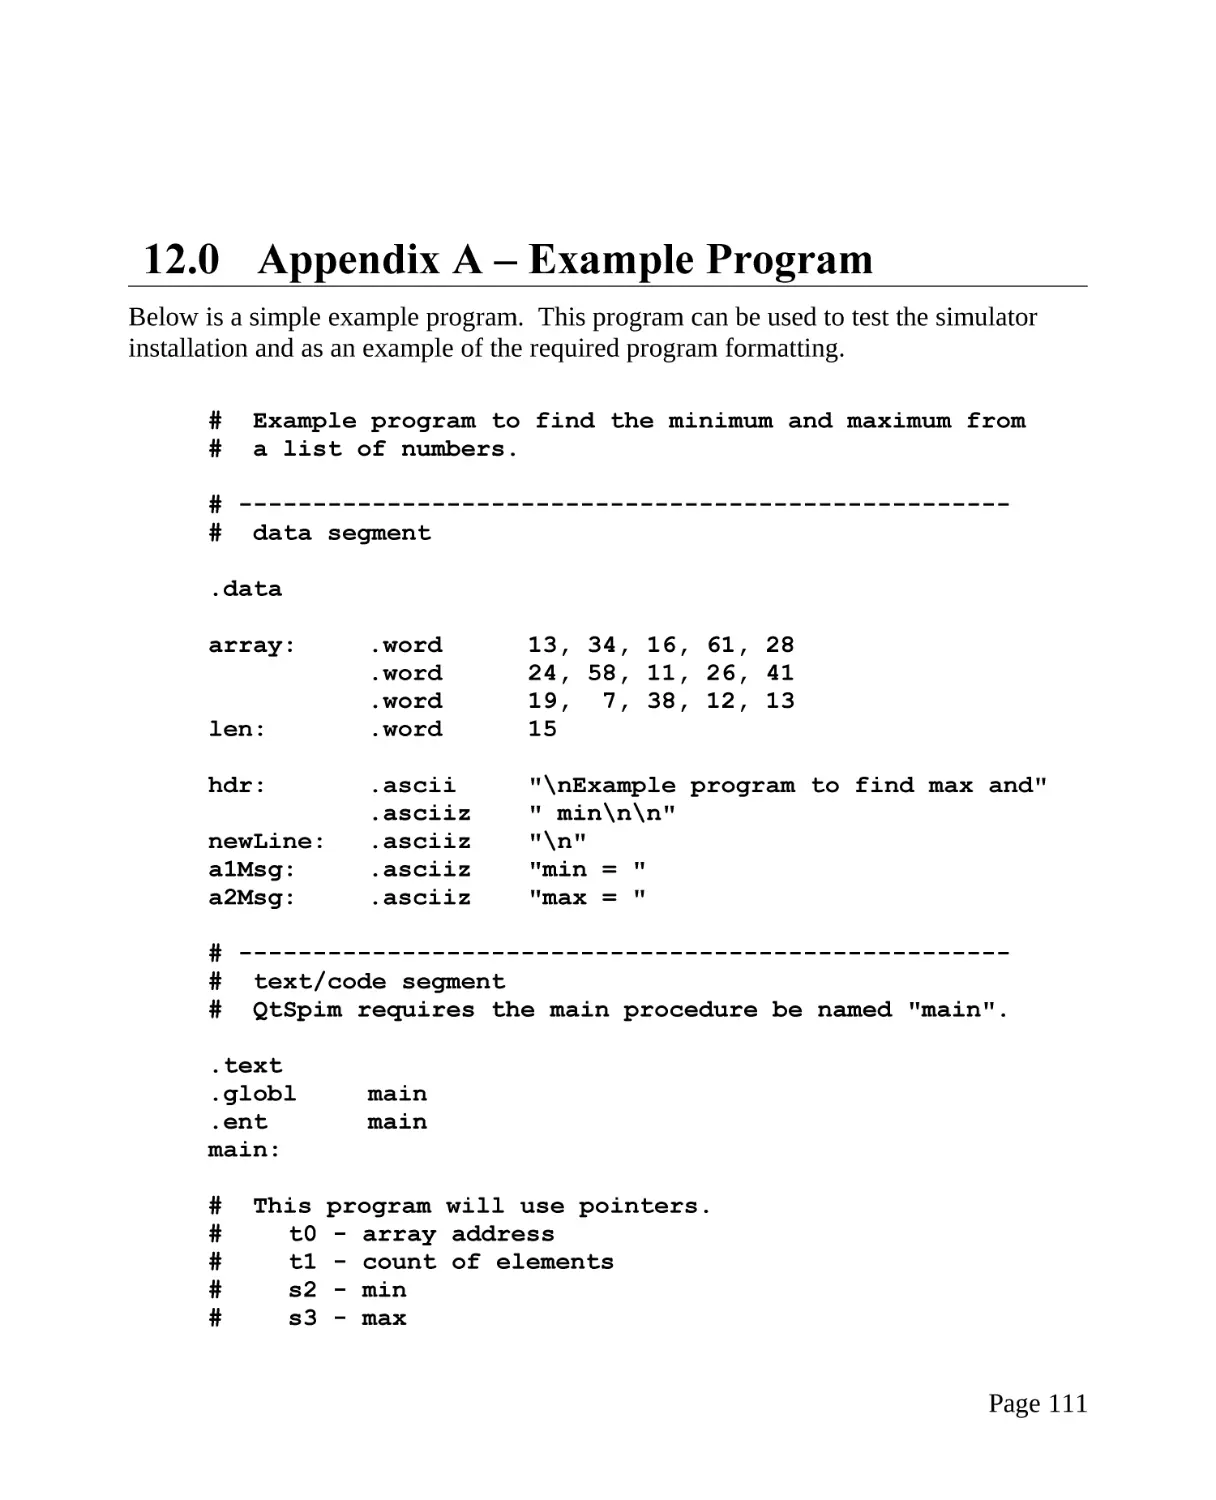 12.0 Appendix A – Example Program